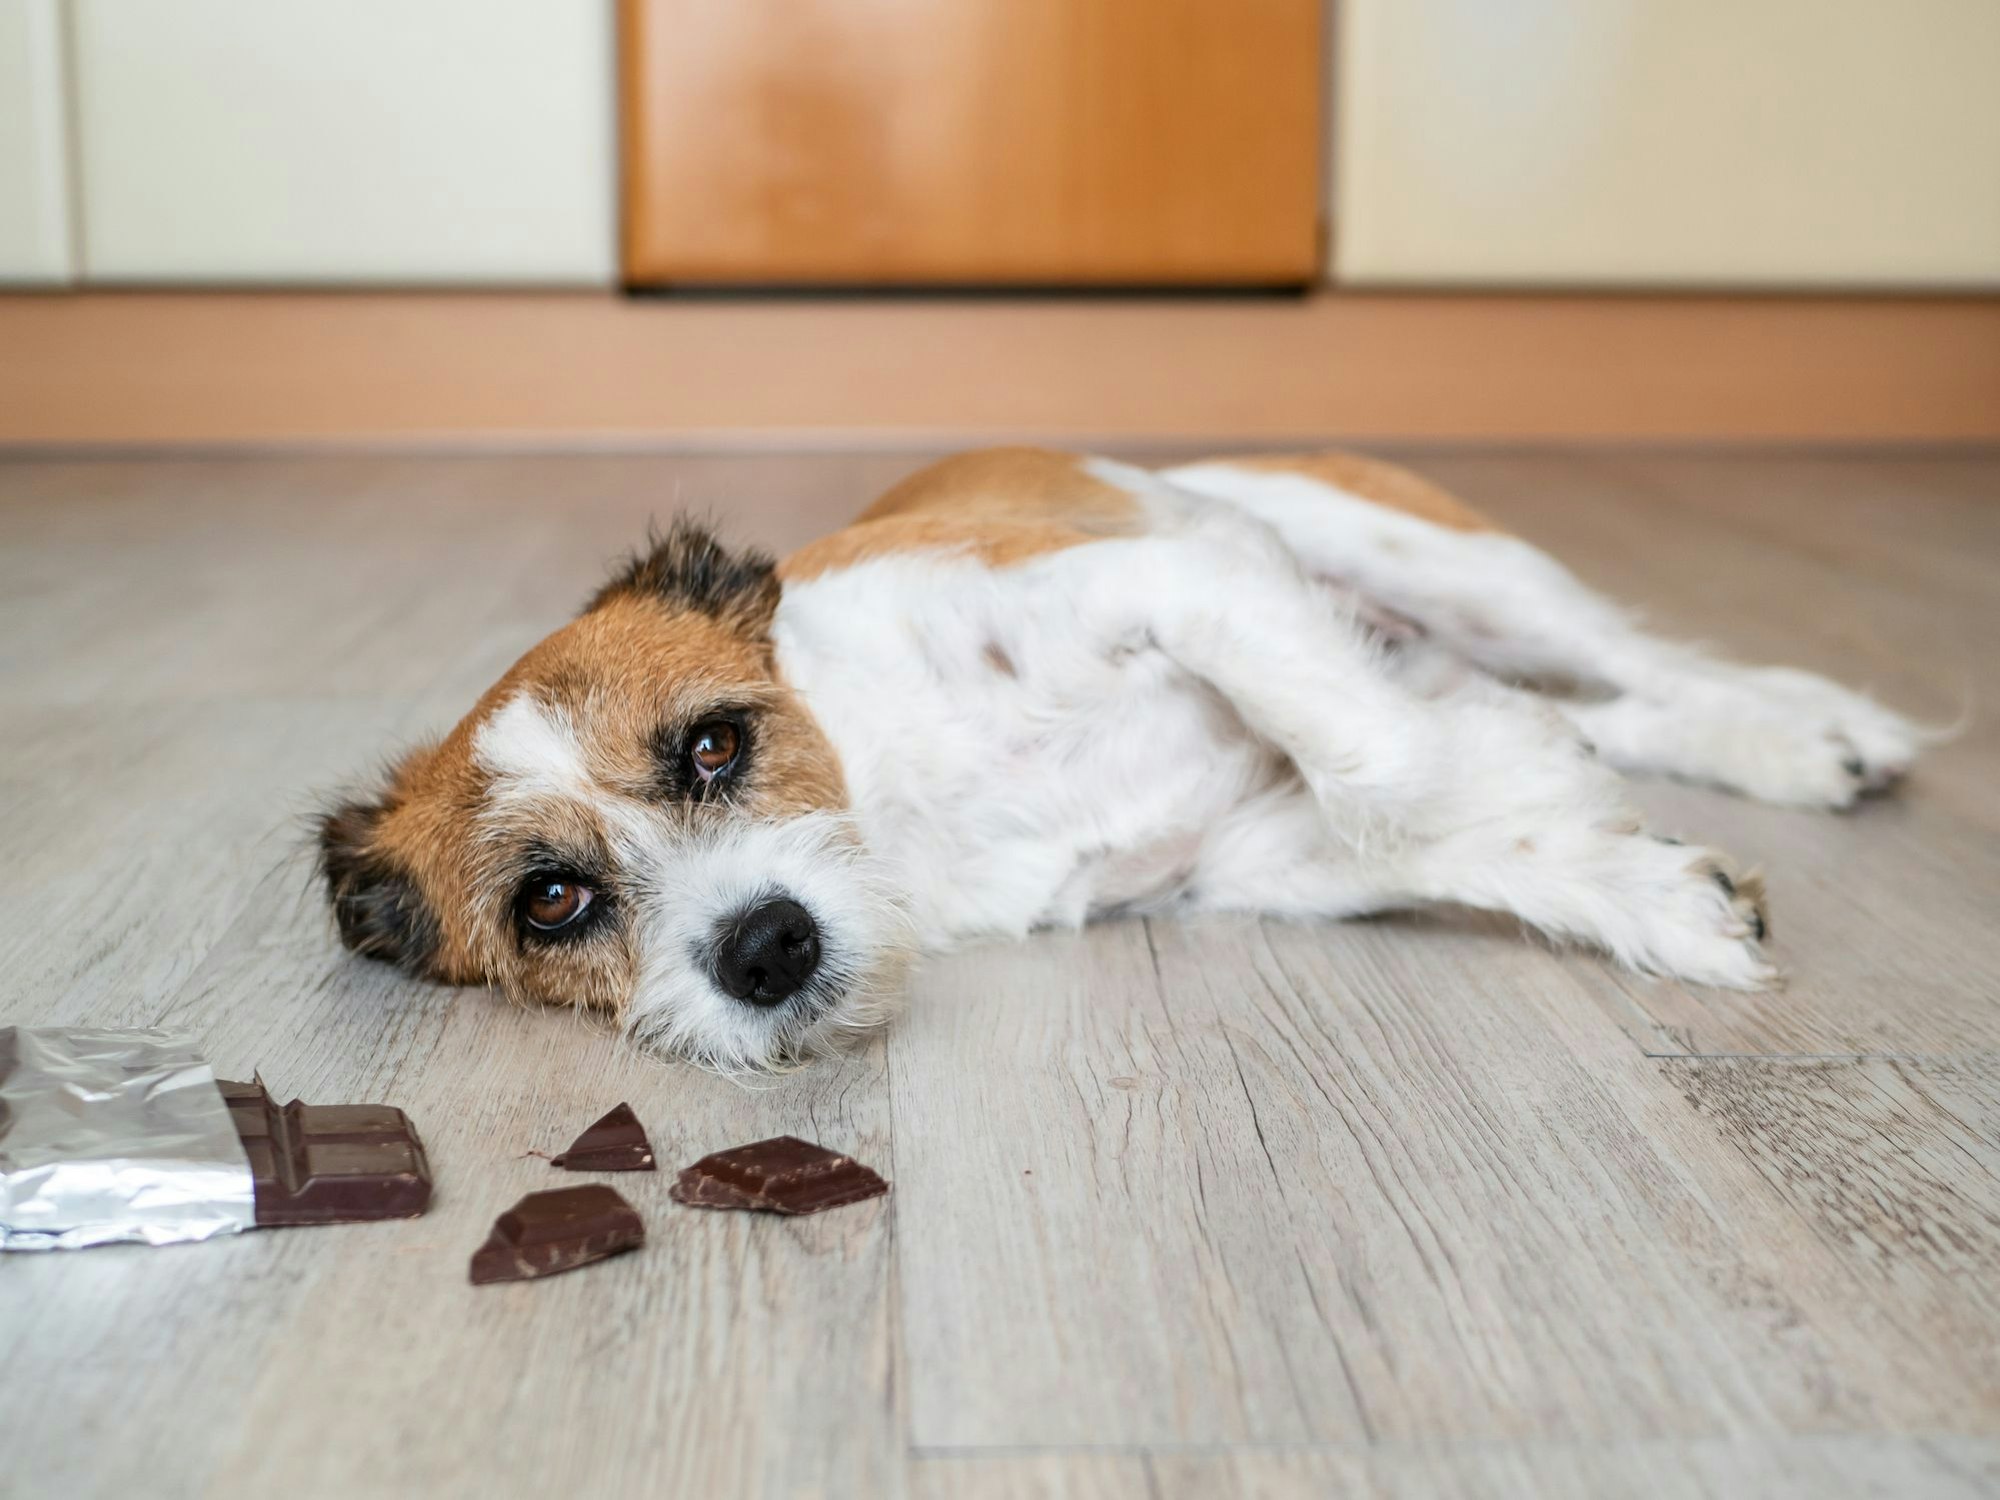 Ein Hund liegt neben einer aufgerissenen Packung mit Schokolade